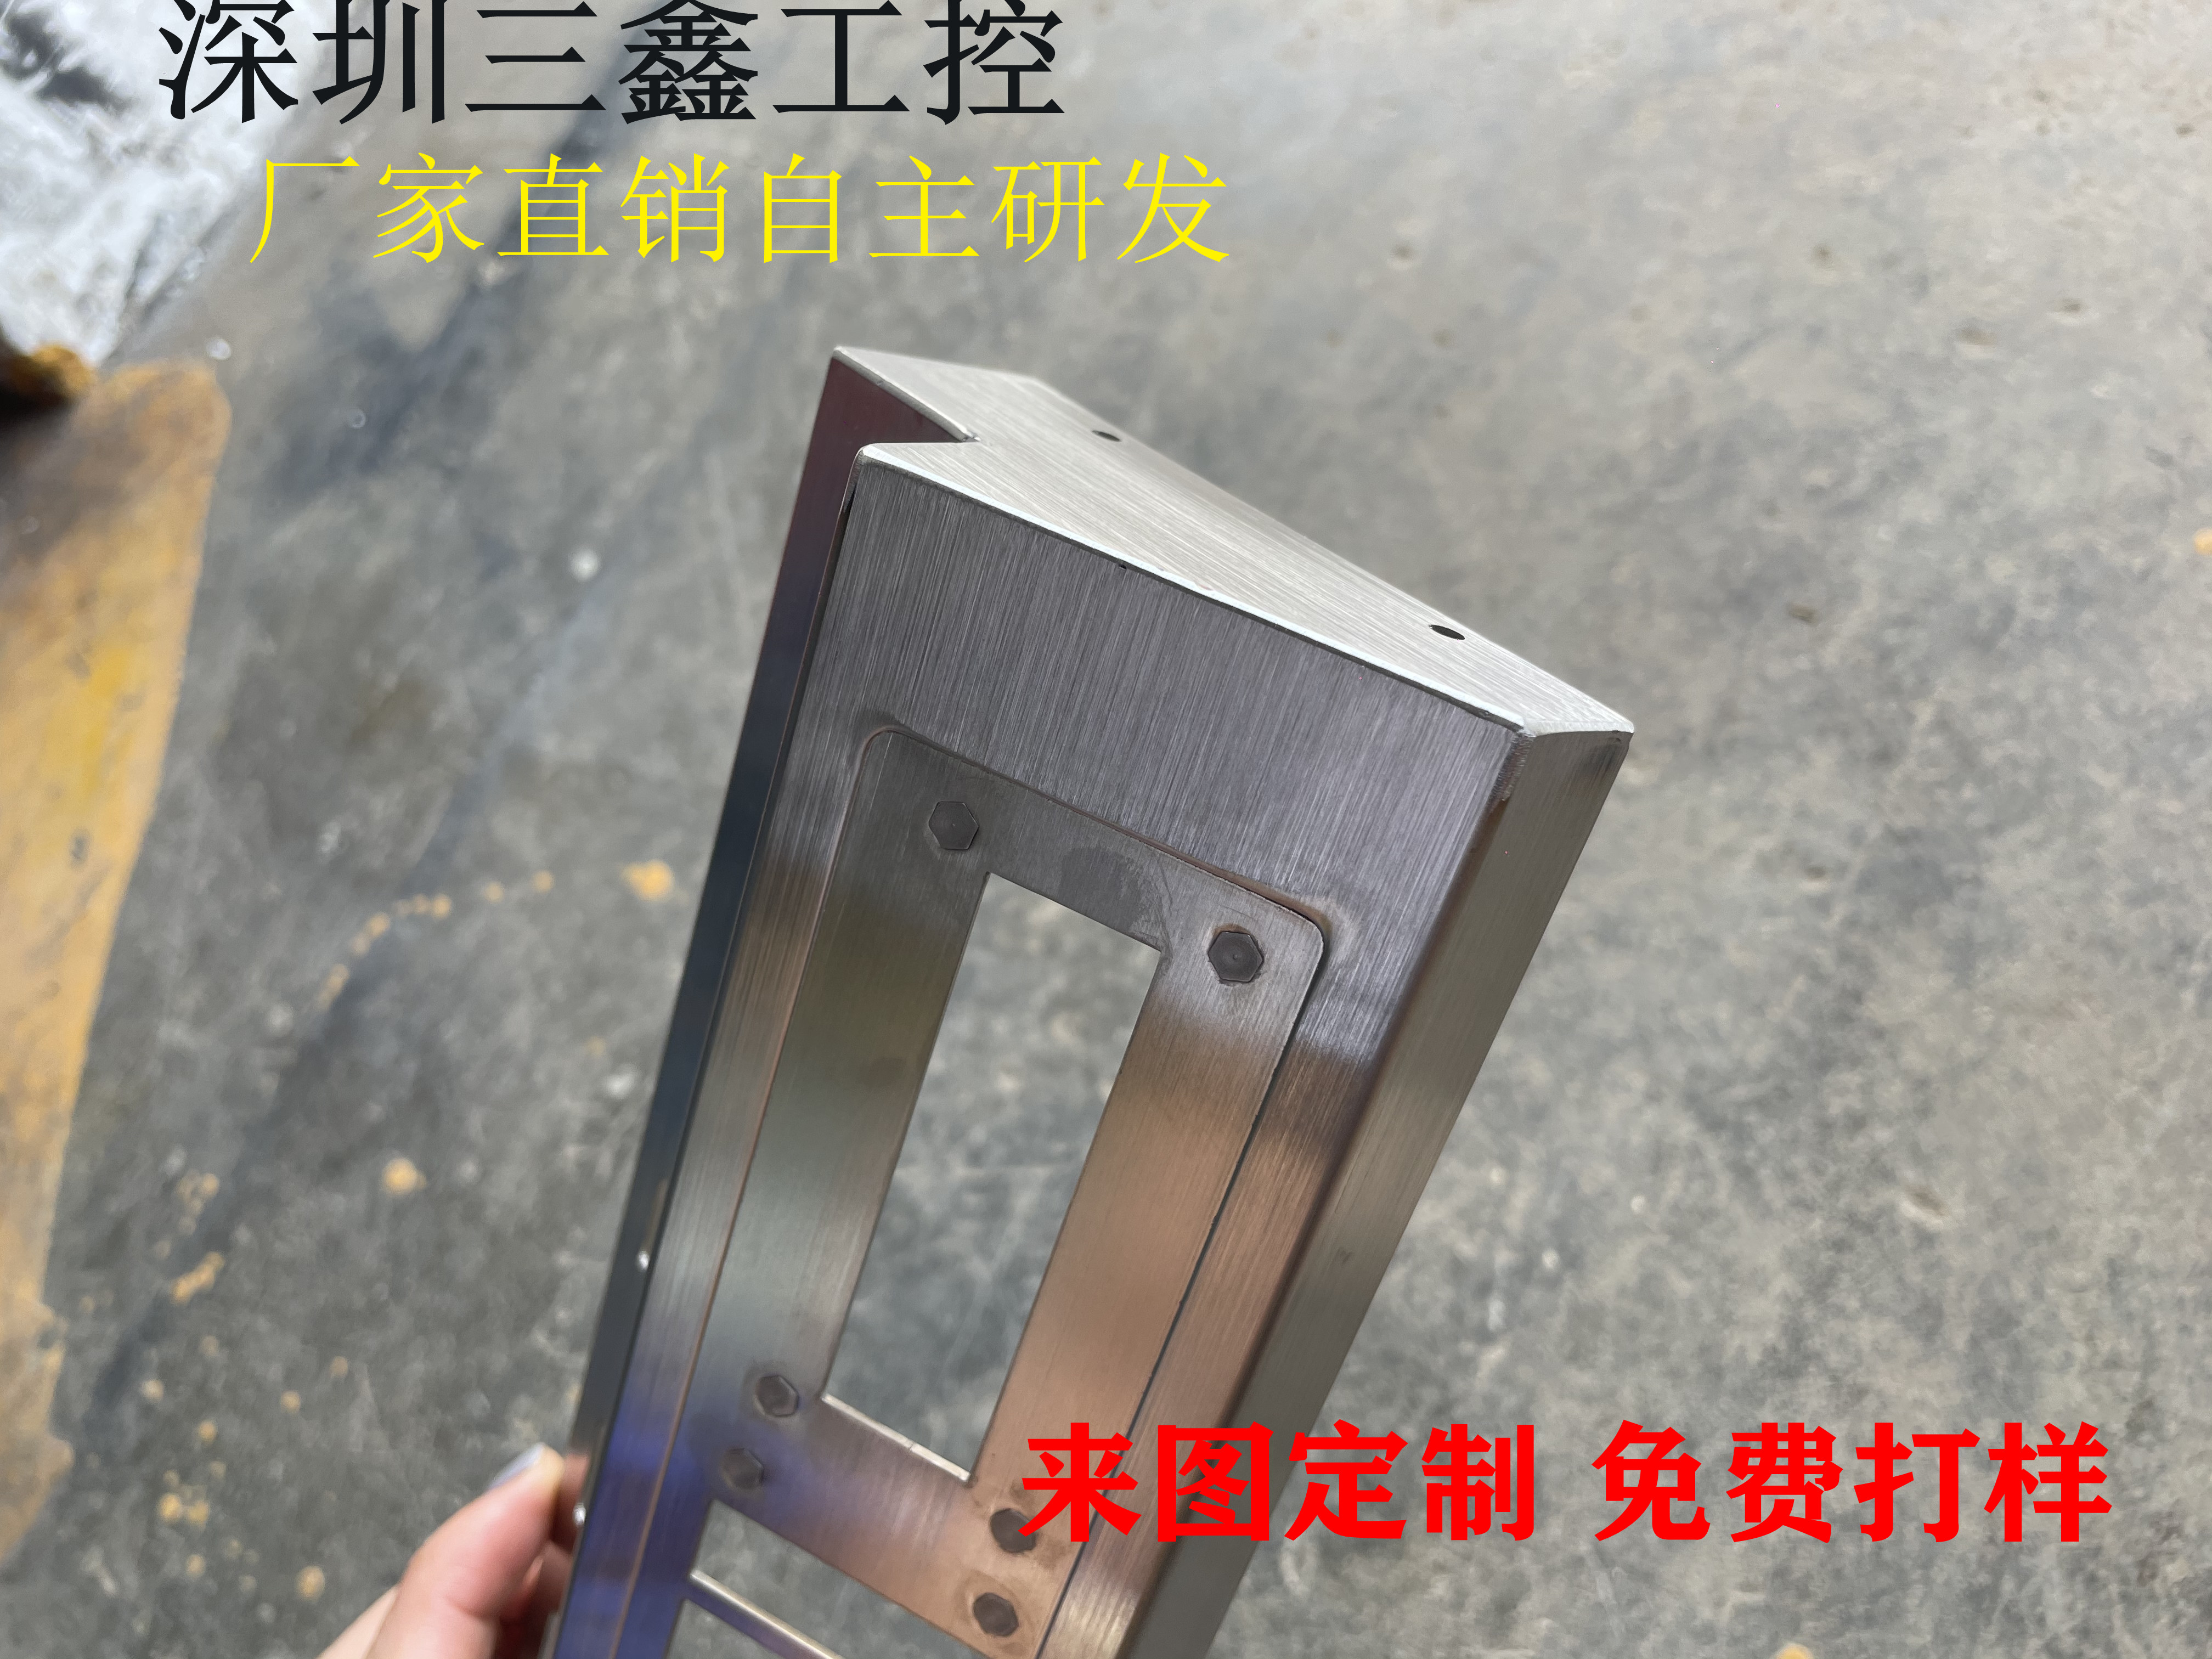 不锈钢电源机箱 深圳标准不锈钢机柜市场报价